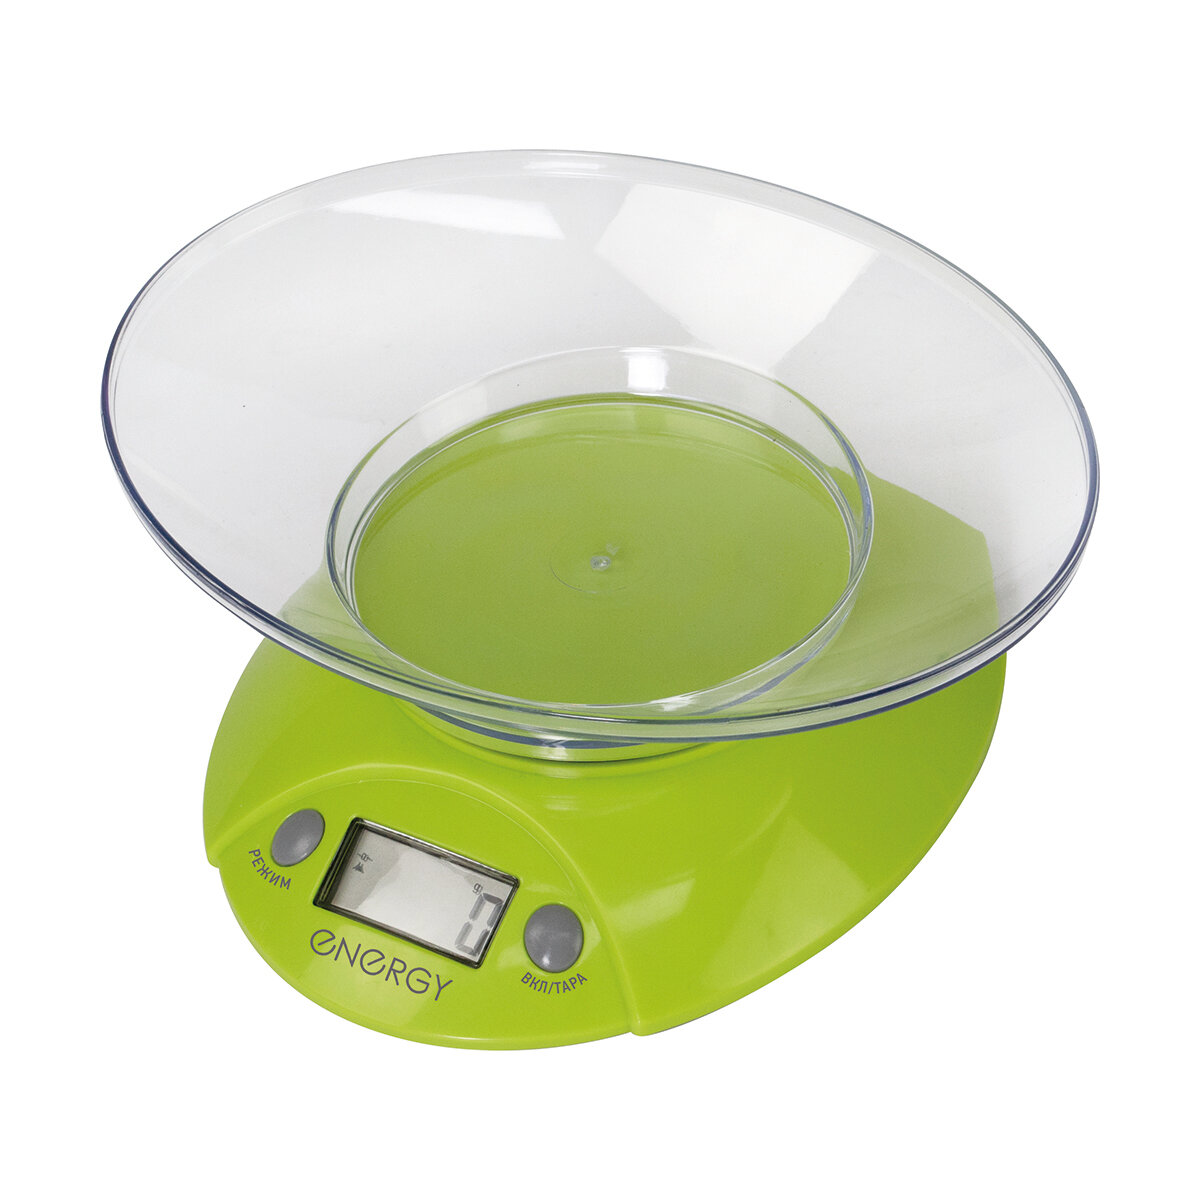 Весы кухонные электронные Energy EN-430, до 5 кг, зеленые